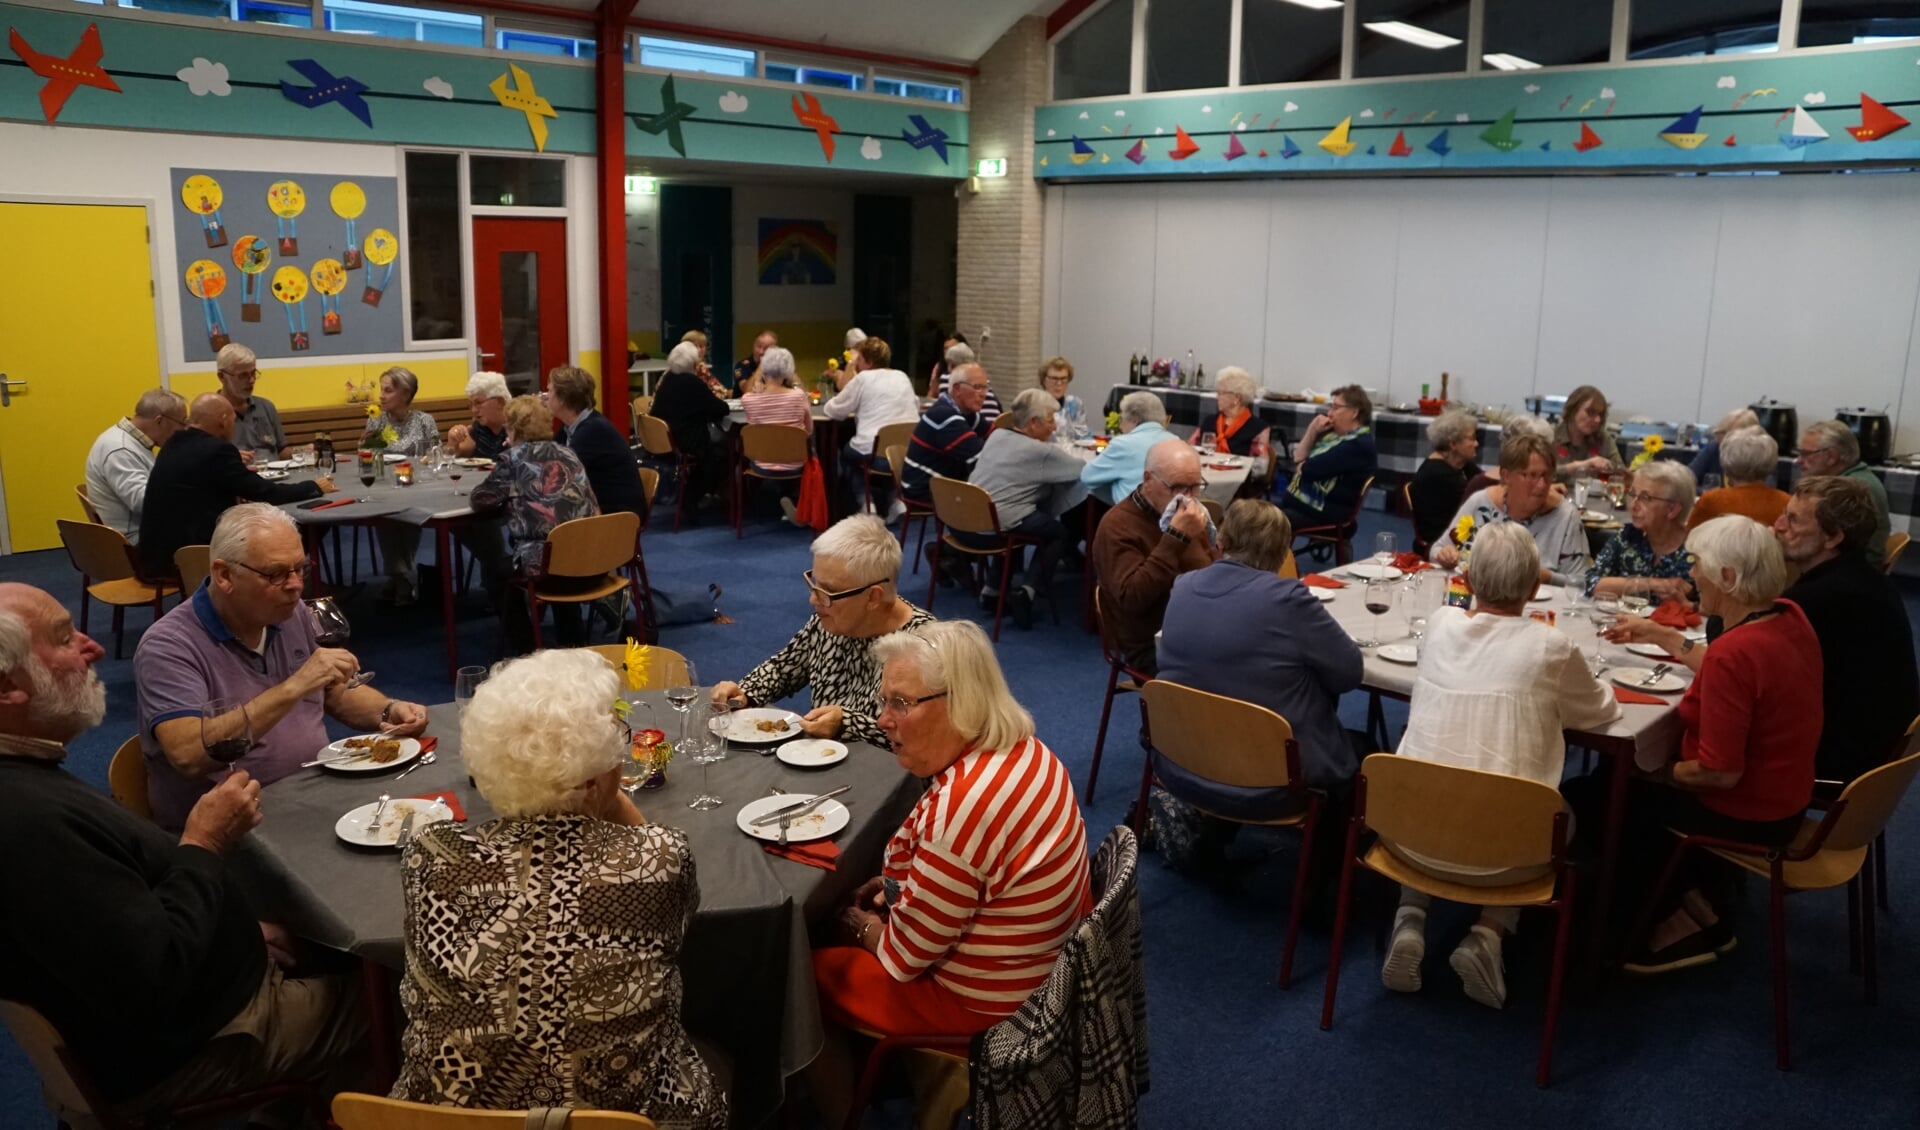 Vier keer per jaar organiseert PKN Dalem-Gorinchem/Oost een aanschuifmaaltijd in de Regenboogschool.